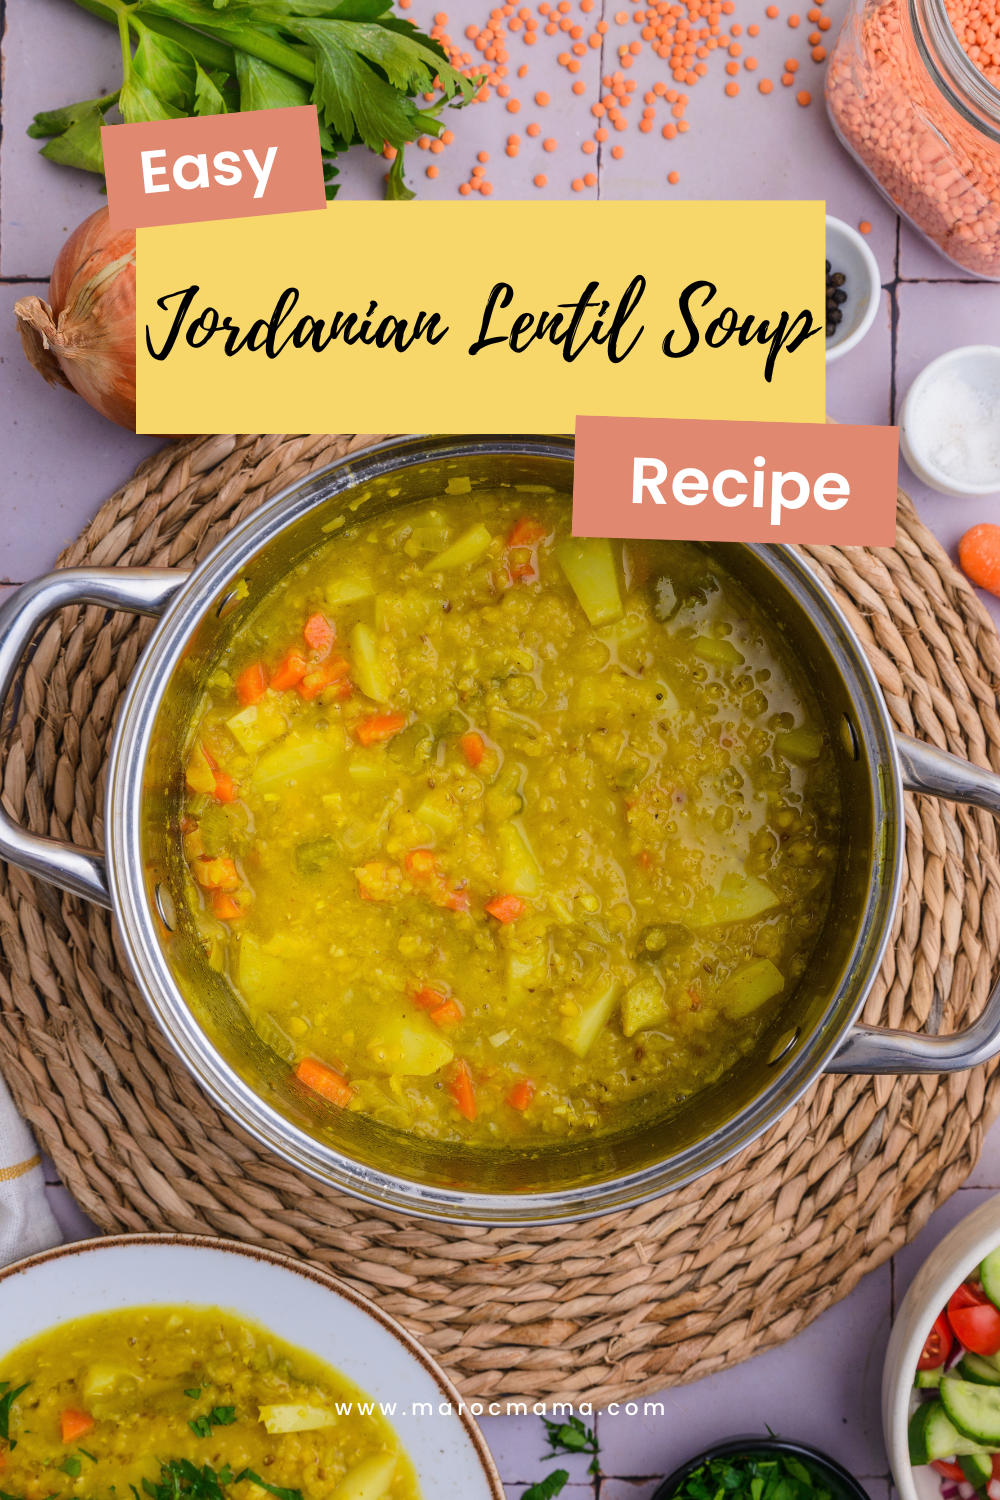 Jordanian-Lentil-Soup